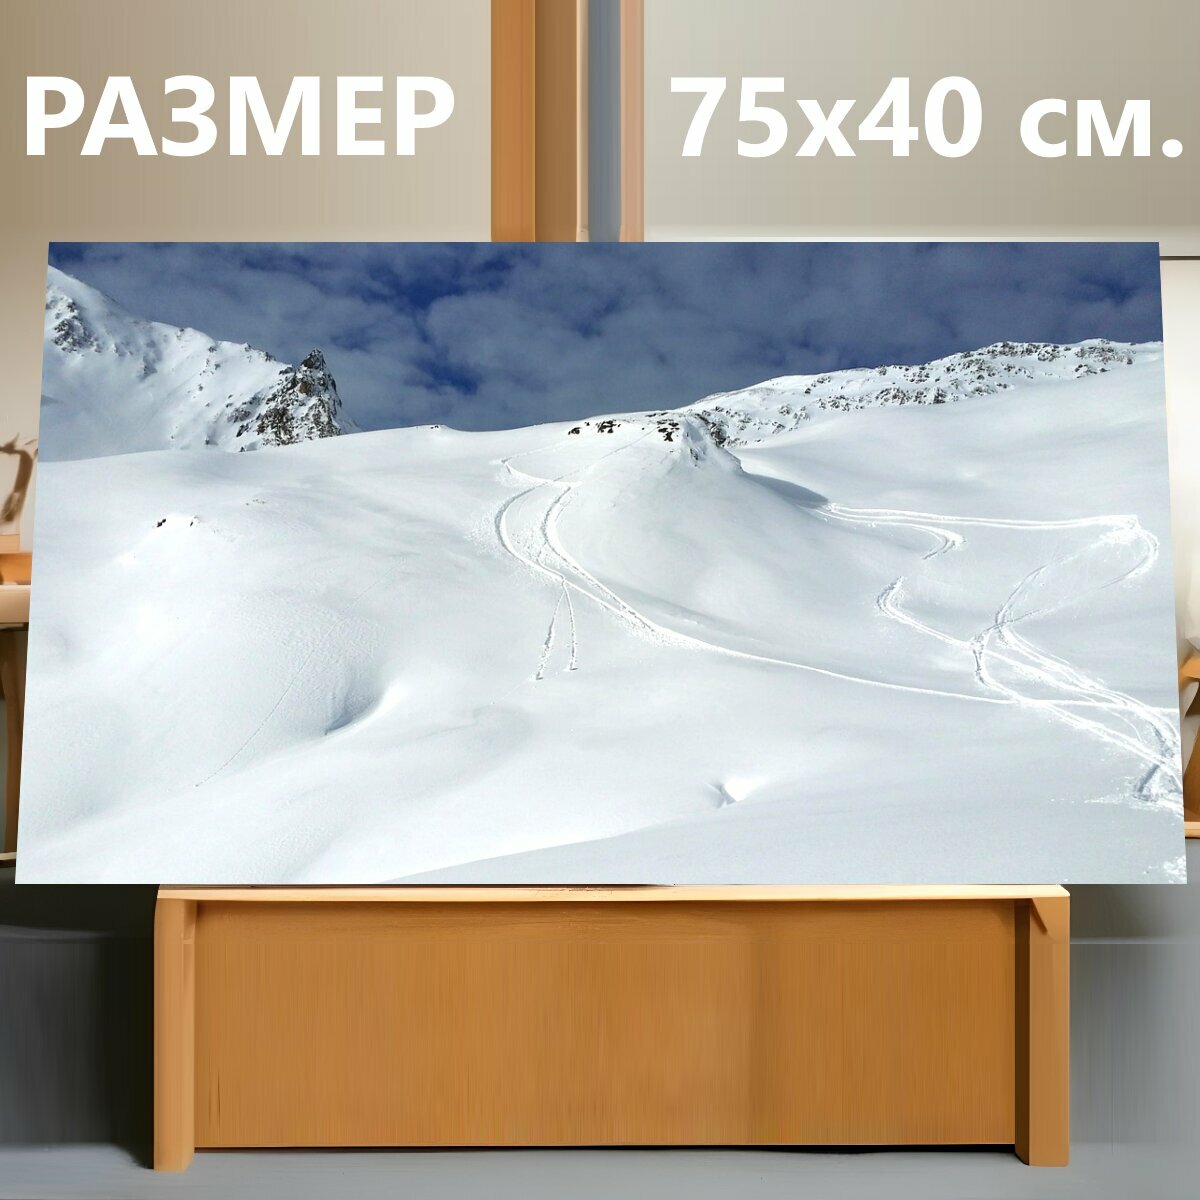 Картина на холсте "Бэккантри лыжно, кататься на лыжах, зимние виды спорта" на подрамнике 75х40 см. для интерьера